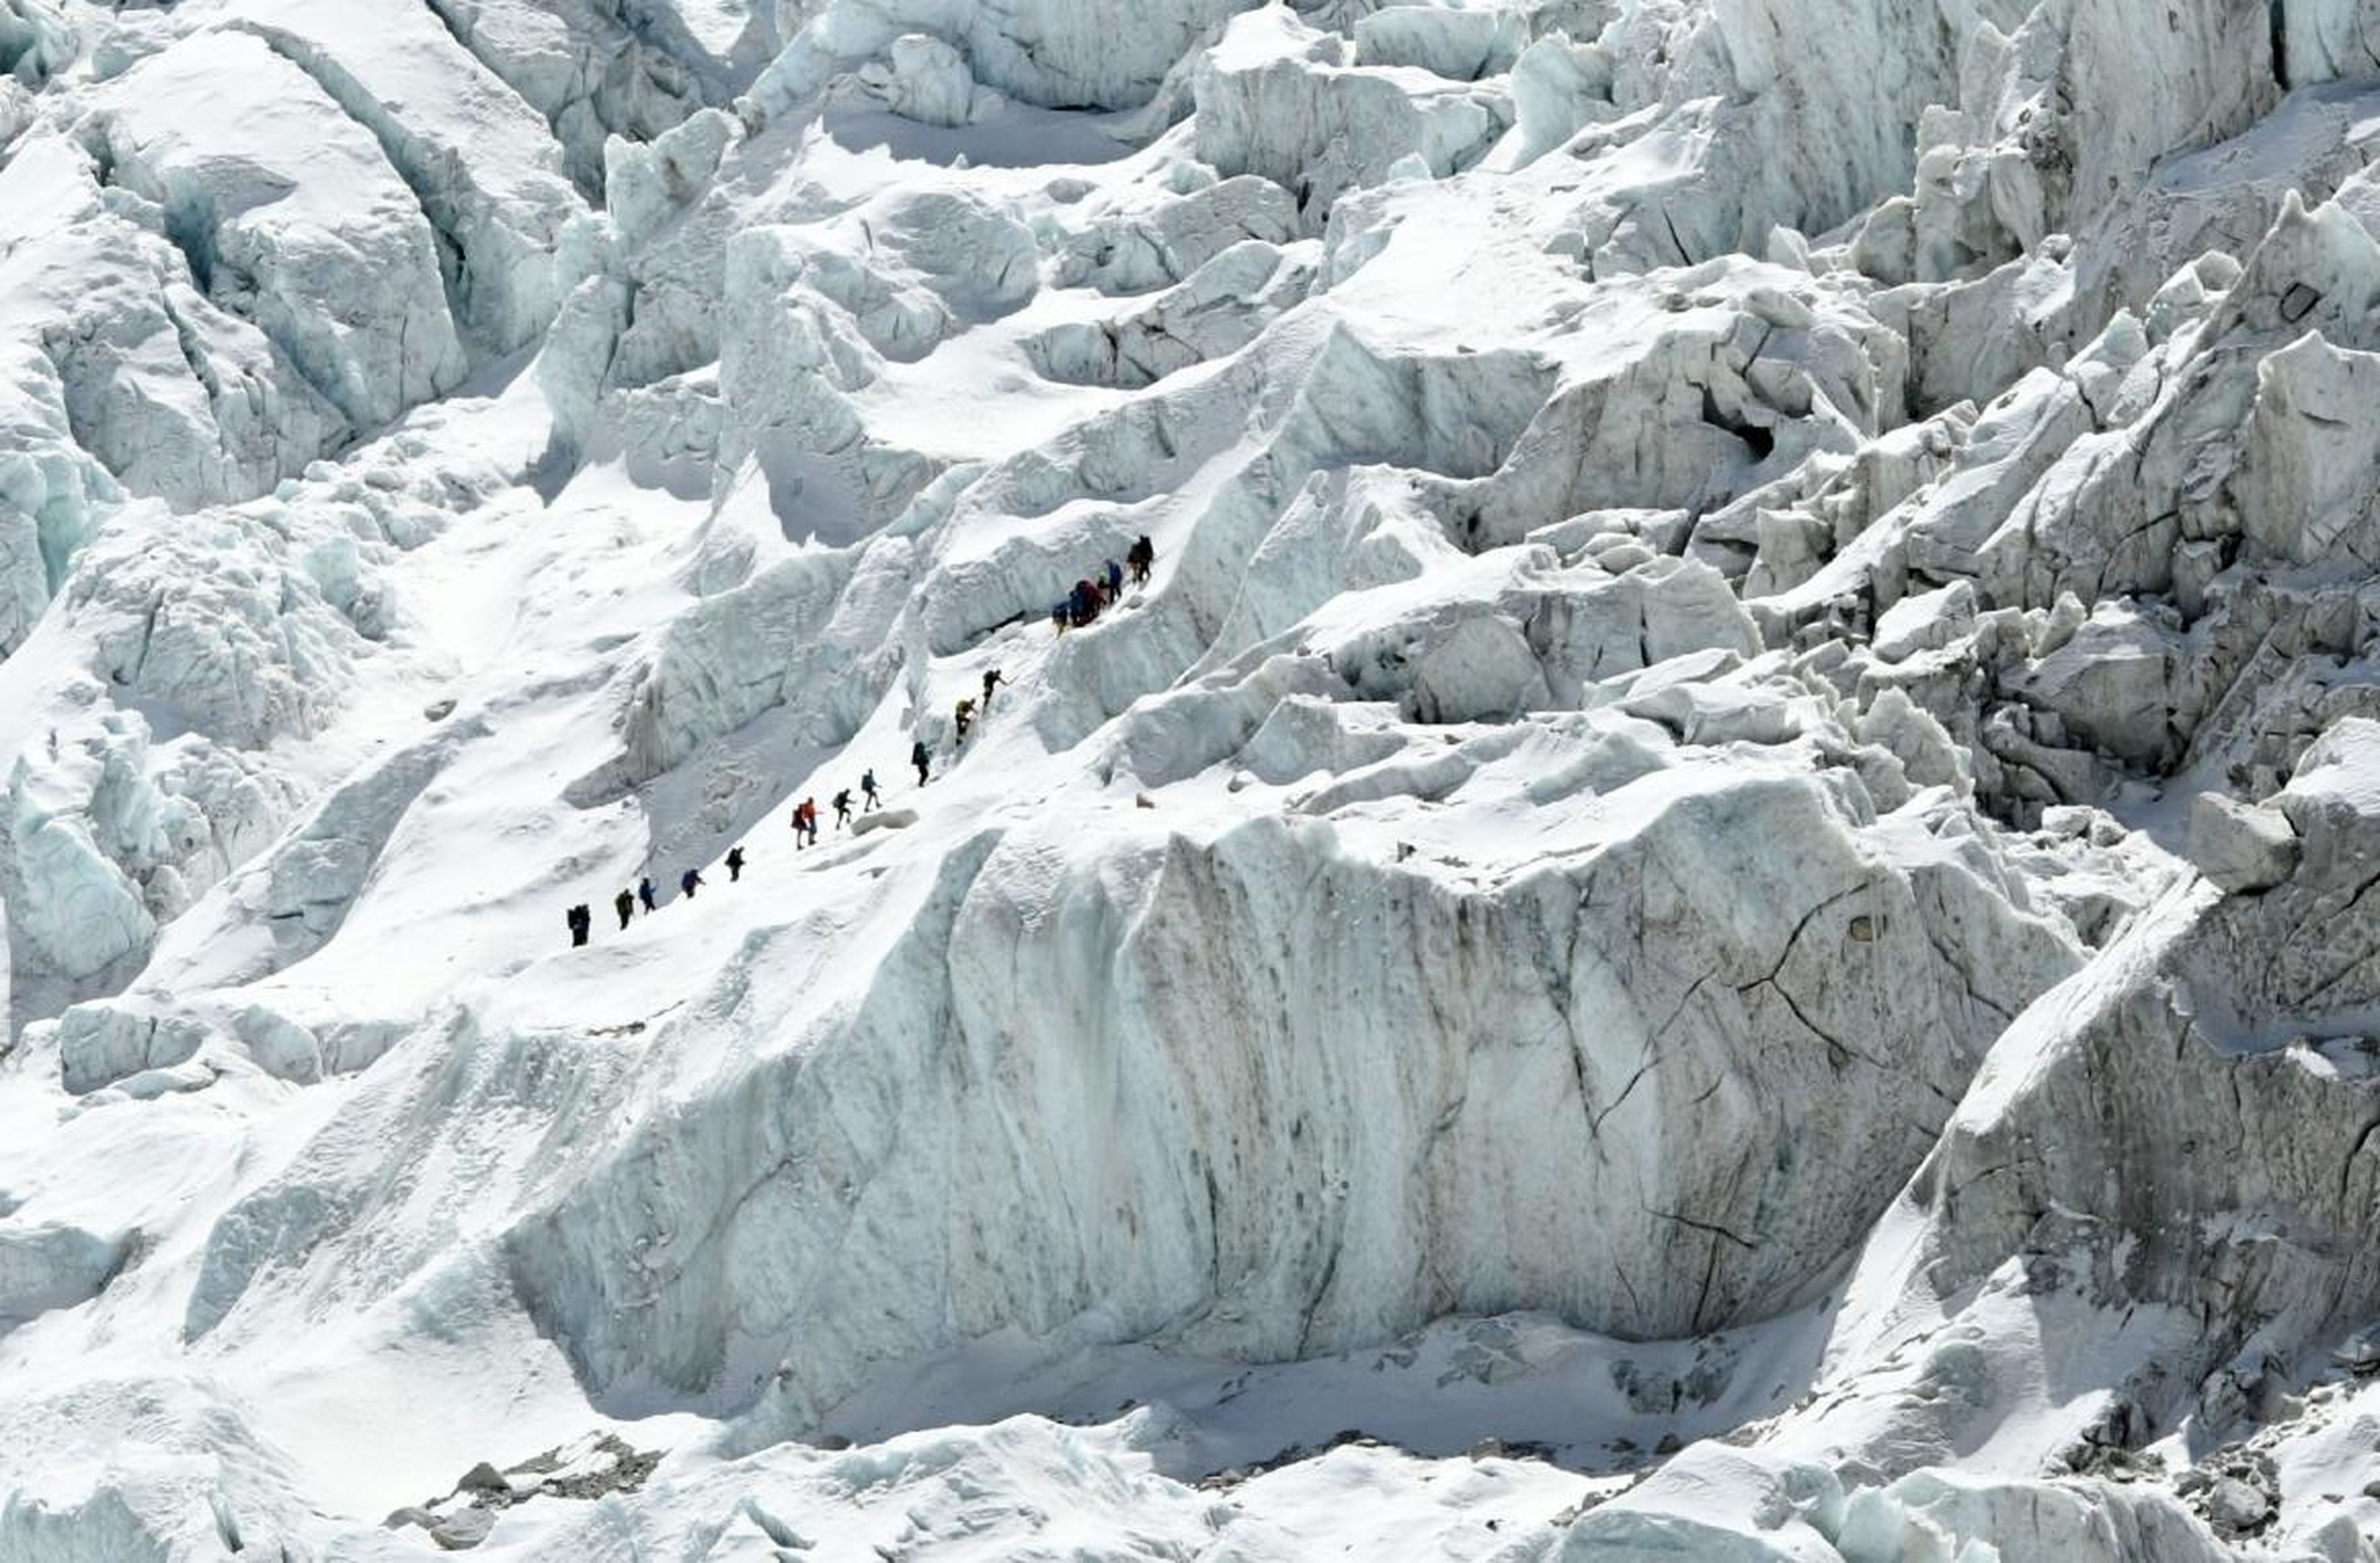 En esta fotografía tomada el 24 de abril de 2018, varios escaladores cruzan Khumbu. Fue tomada desde el campamento base.